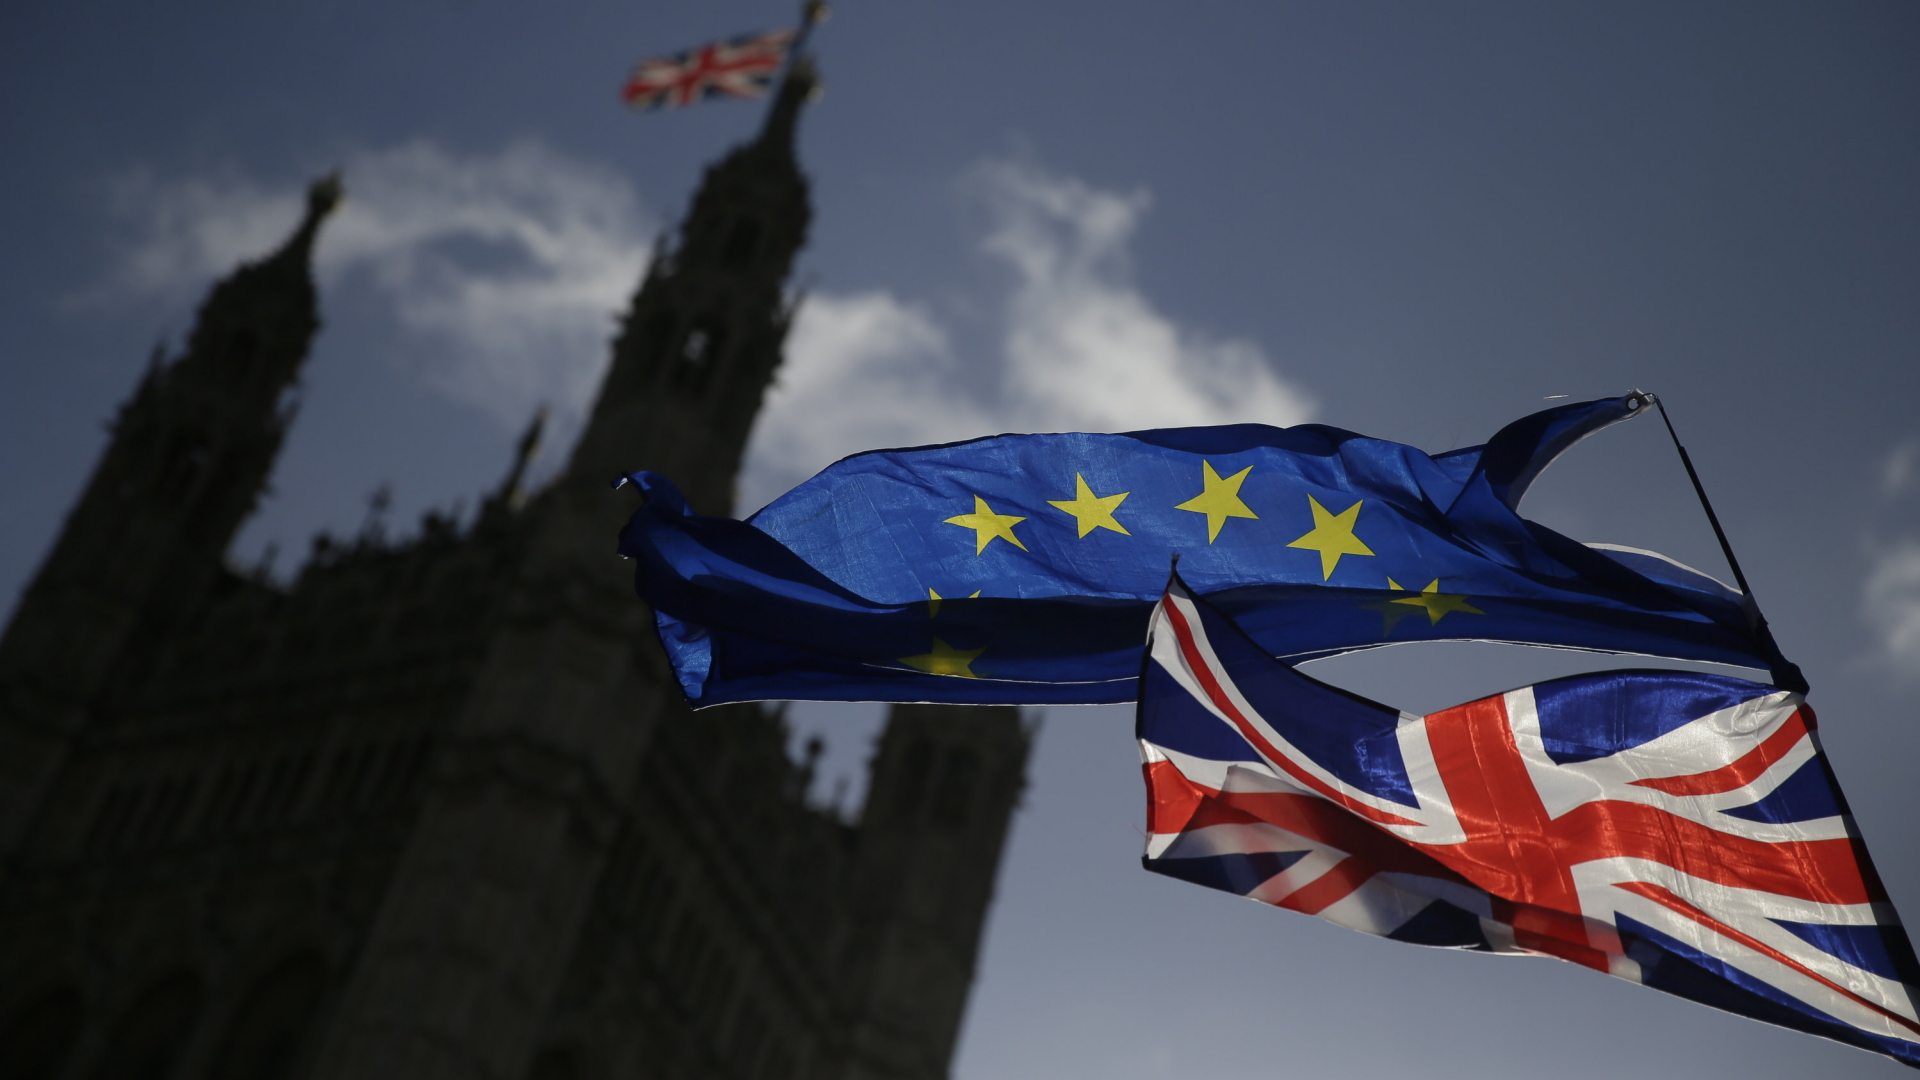 Eine EU-Flagge und eine britische Nationalflagge, der Union Jack, wehen vor dem britischen Parlament in London